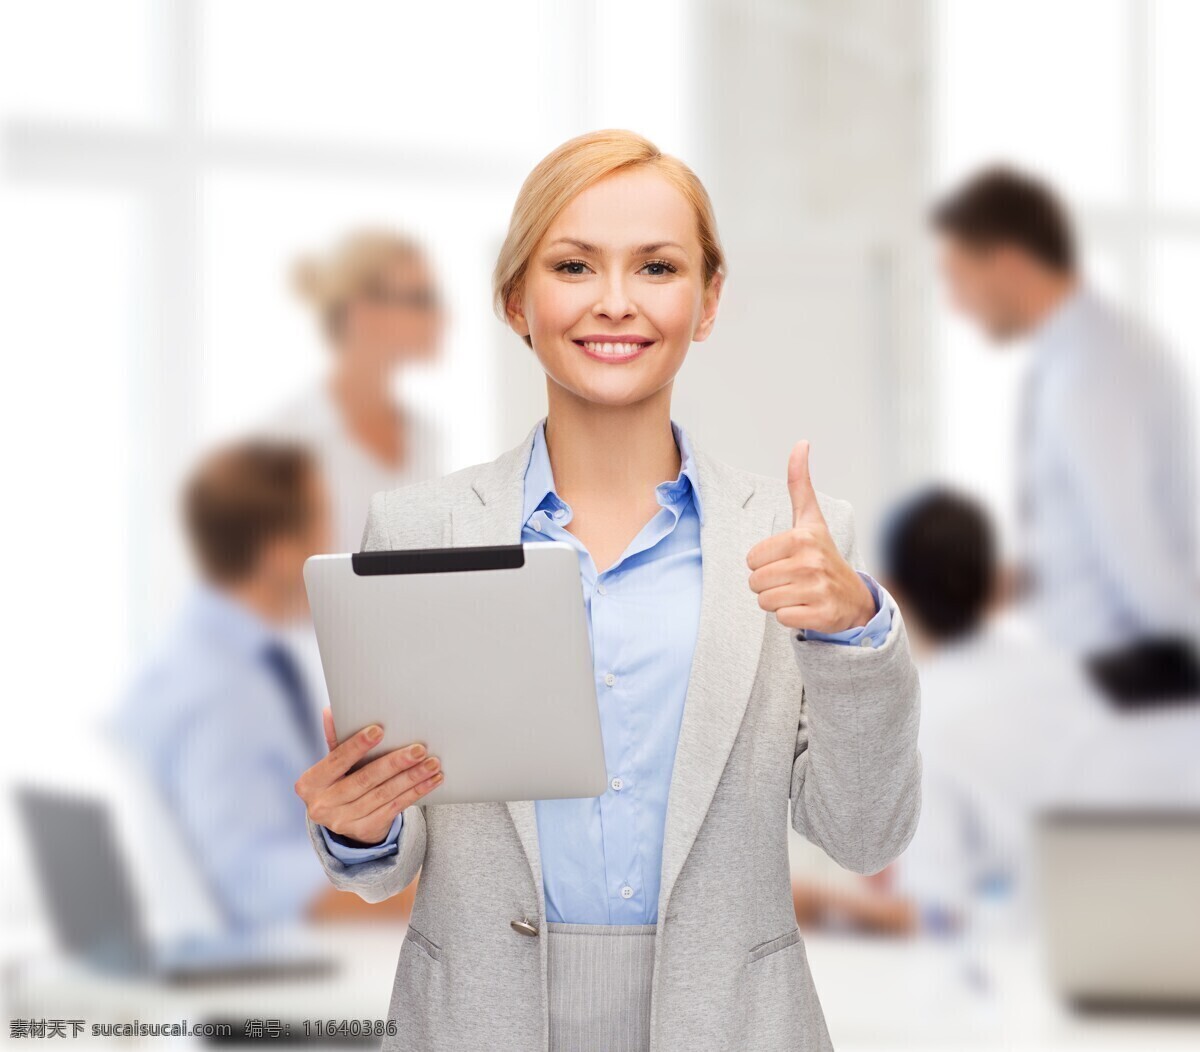 竖 大拇指 职业女性 平板电脑 白领 商务女士 职业人物 商务人士 人物图片